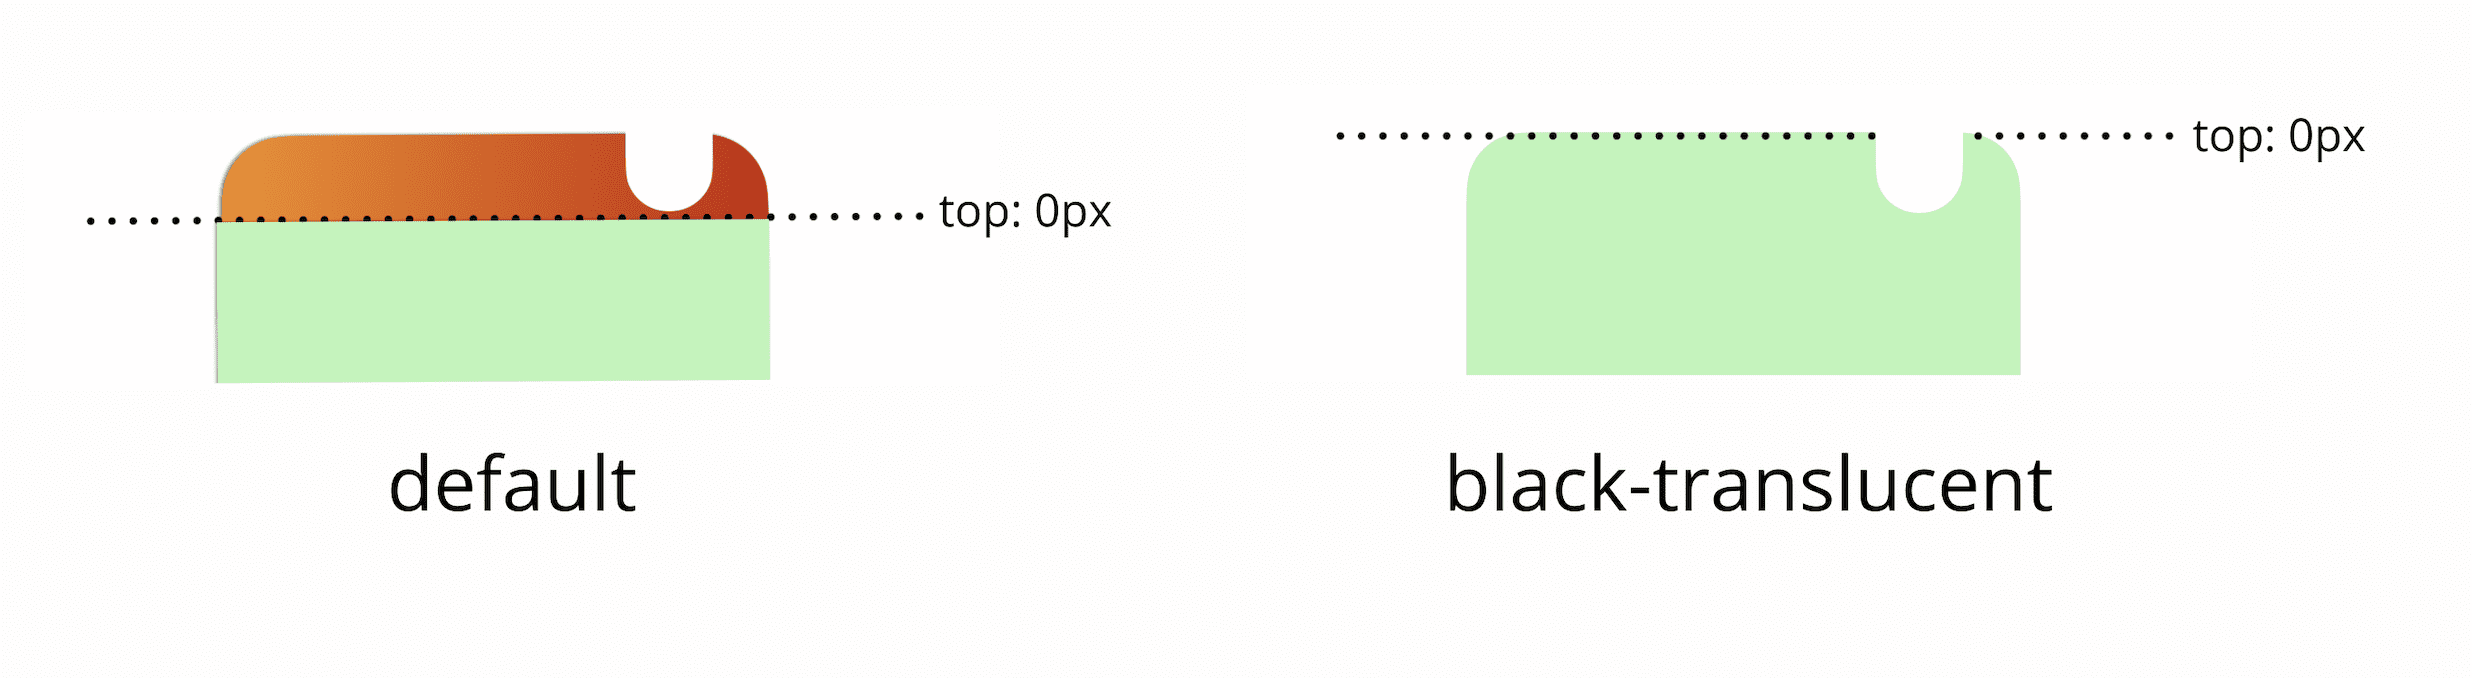 Por padrão, o 0 px superior da janela de visualização fica abaixo da barra de status. Se você adicionar uma metatag preta translúcida, o 0 px superior da janela de visualização corresponderá à parte superior física da tela